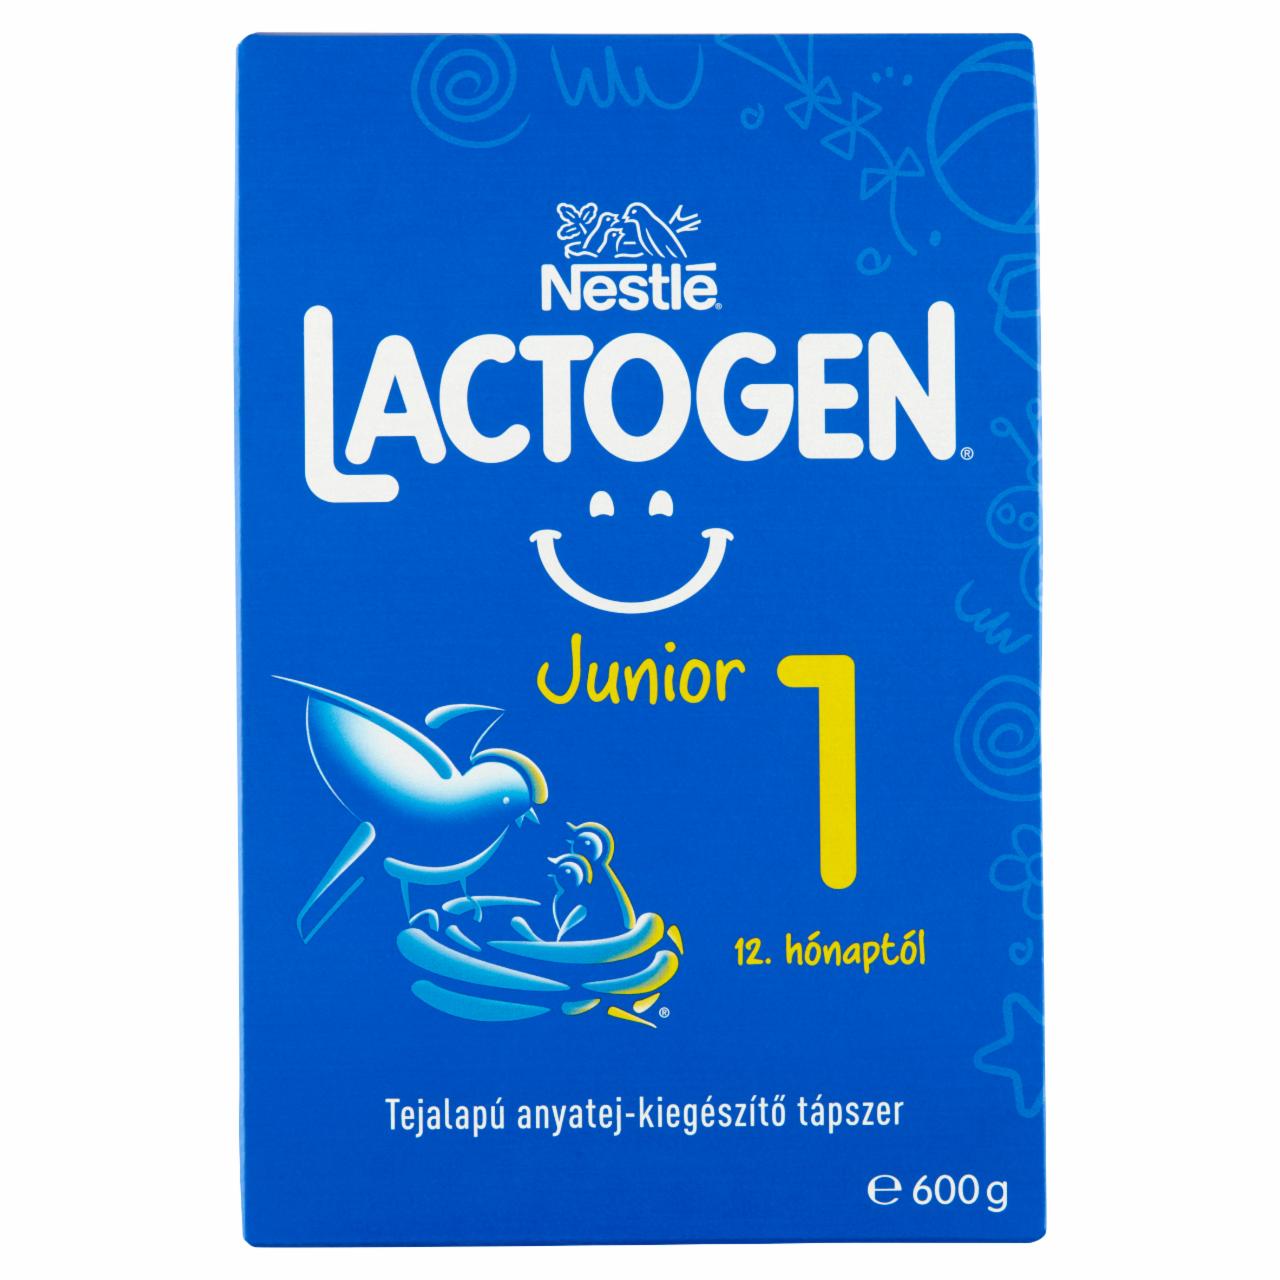 Képek - Nestlé Lactogen Junior 1 tejalapú anyatej-kiegészítő tápszer 12. hónaptól 2 x 300 g (600 g)